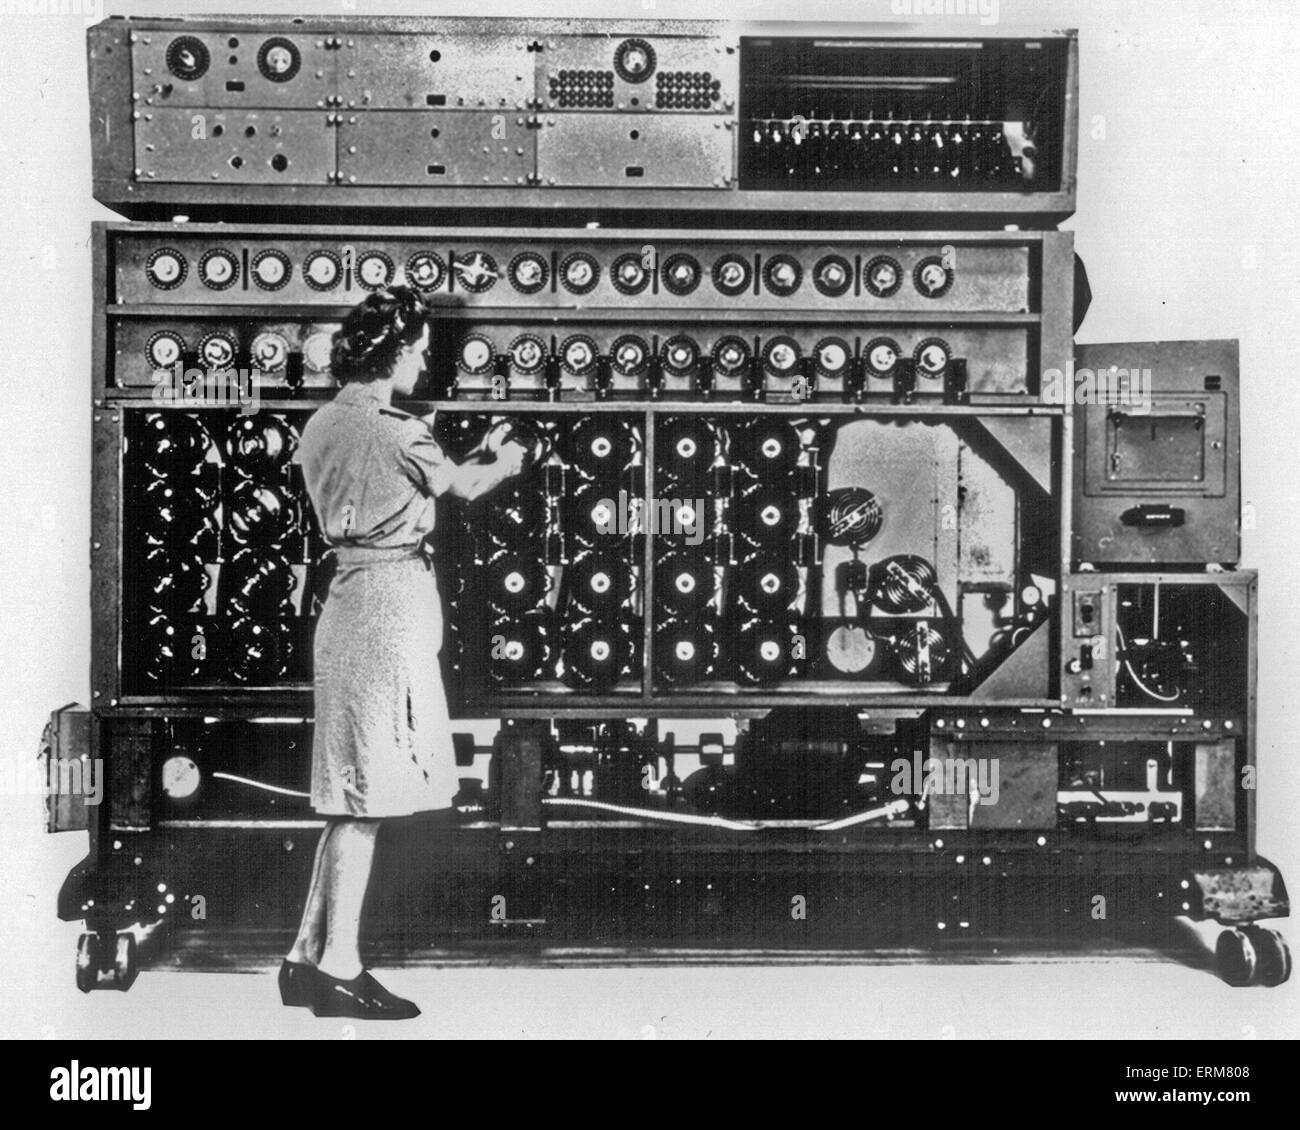 AMERICAN NAVAL BOMBE Mk 3 basierend auf dem Bletchley Park Design aber mit 16 4-Rotor Enigma-Analoga, die es viel schneller gemacht. Hergestellt von der National Cash Register Company of Dayton, Ohio. Foto: National Security Agency Stockfoto